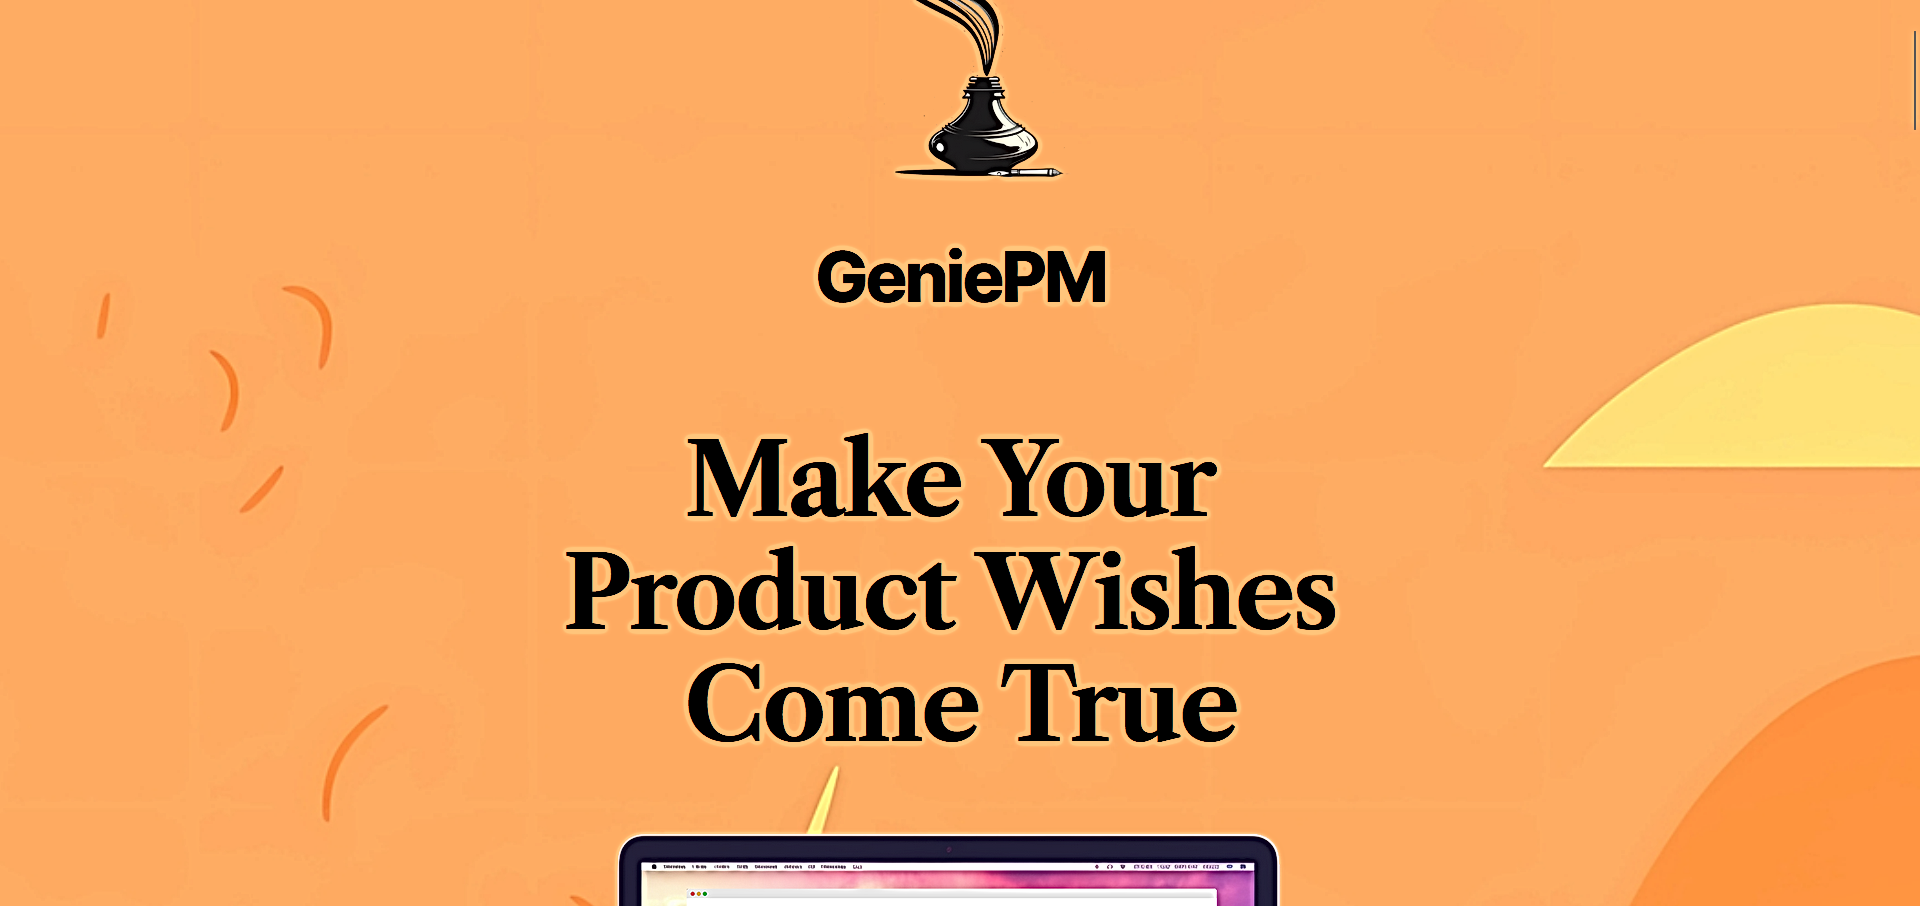 GeniePM featured